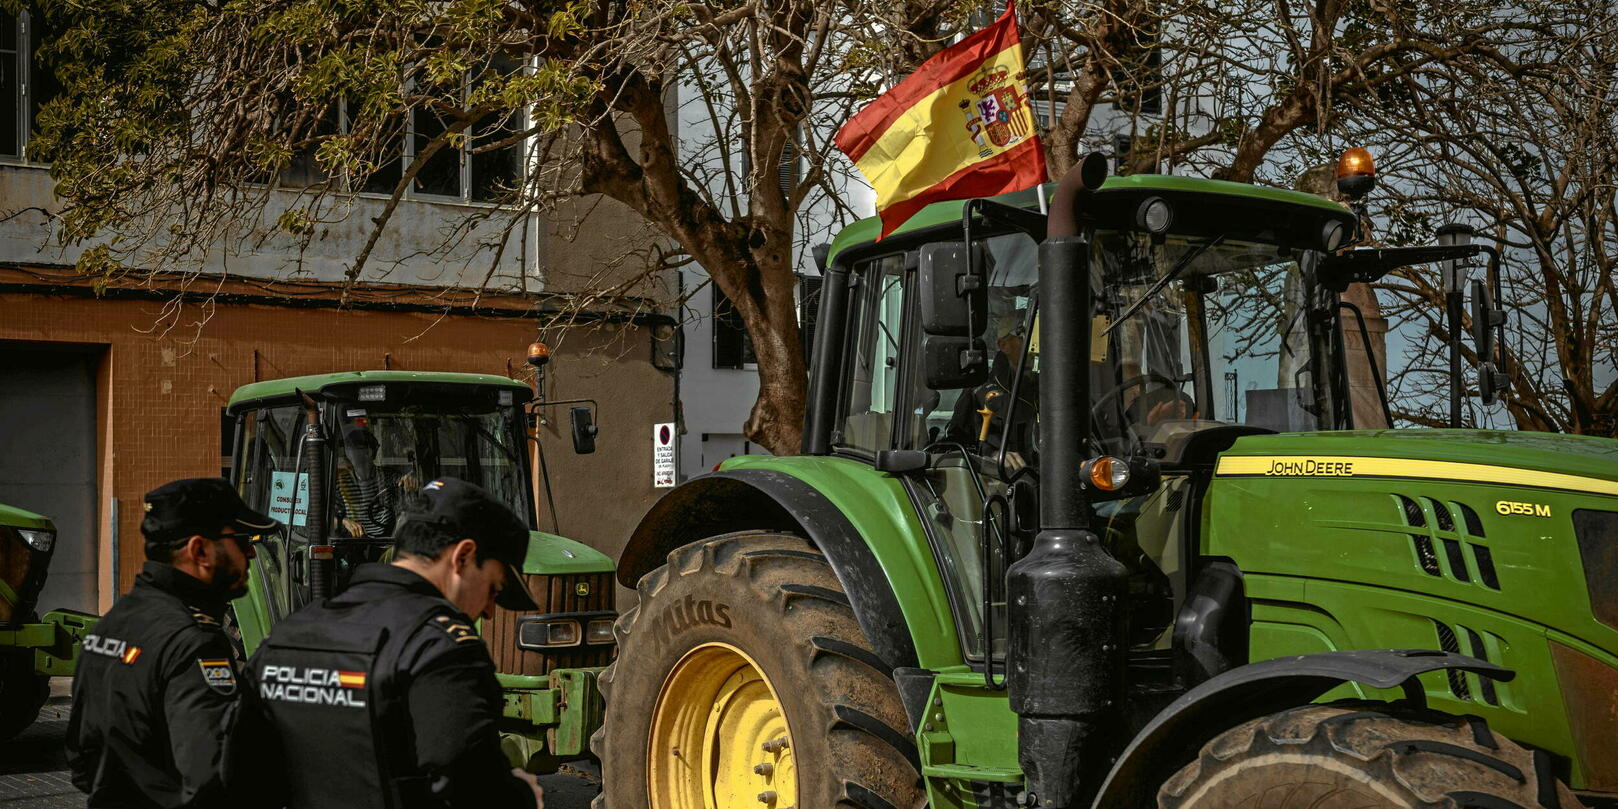 Grecja, Hiszpania, Polska… Rolnicy w Europie w dalszym ciągu się mobilizują